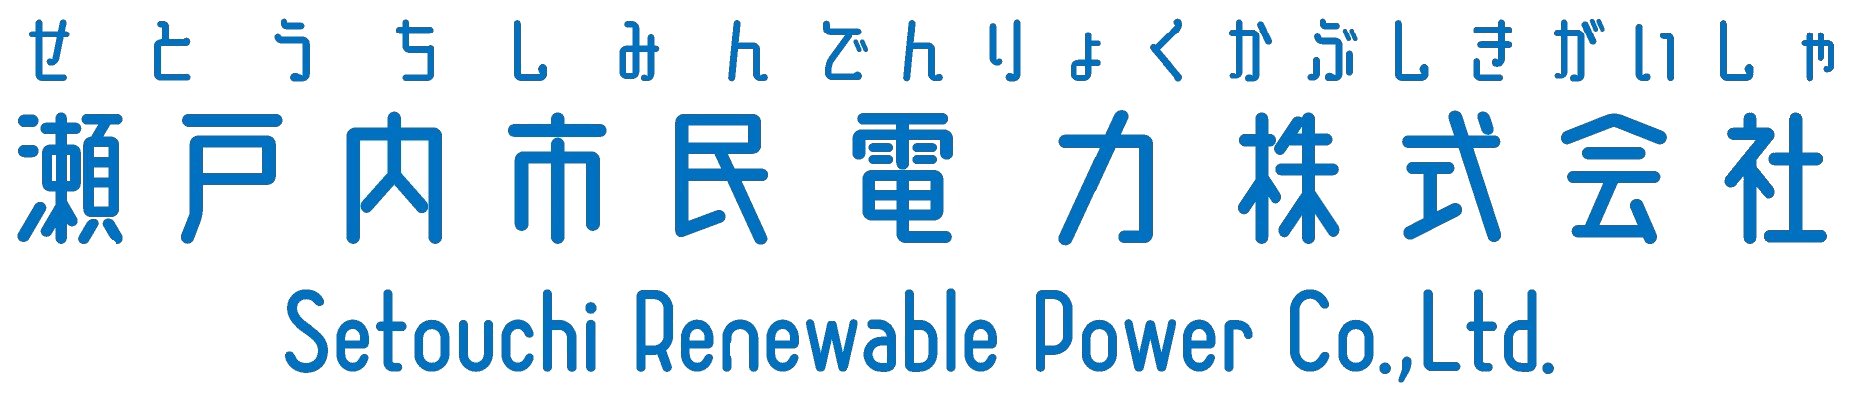 瀬戸内市民電力株式会社